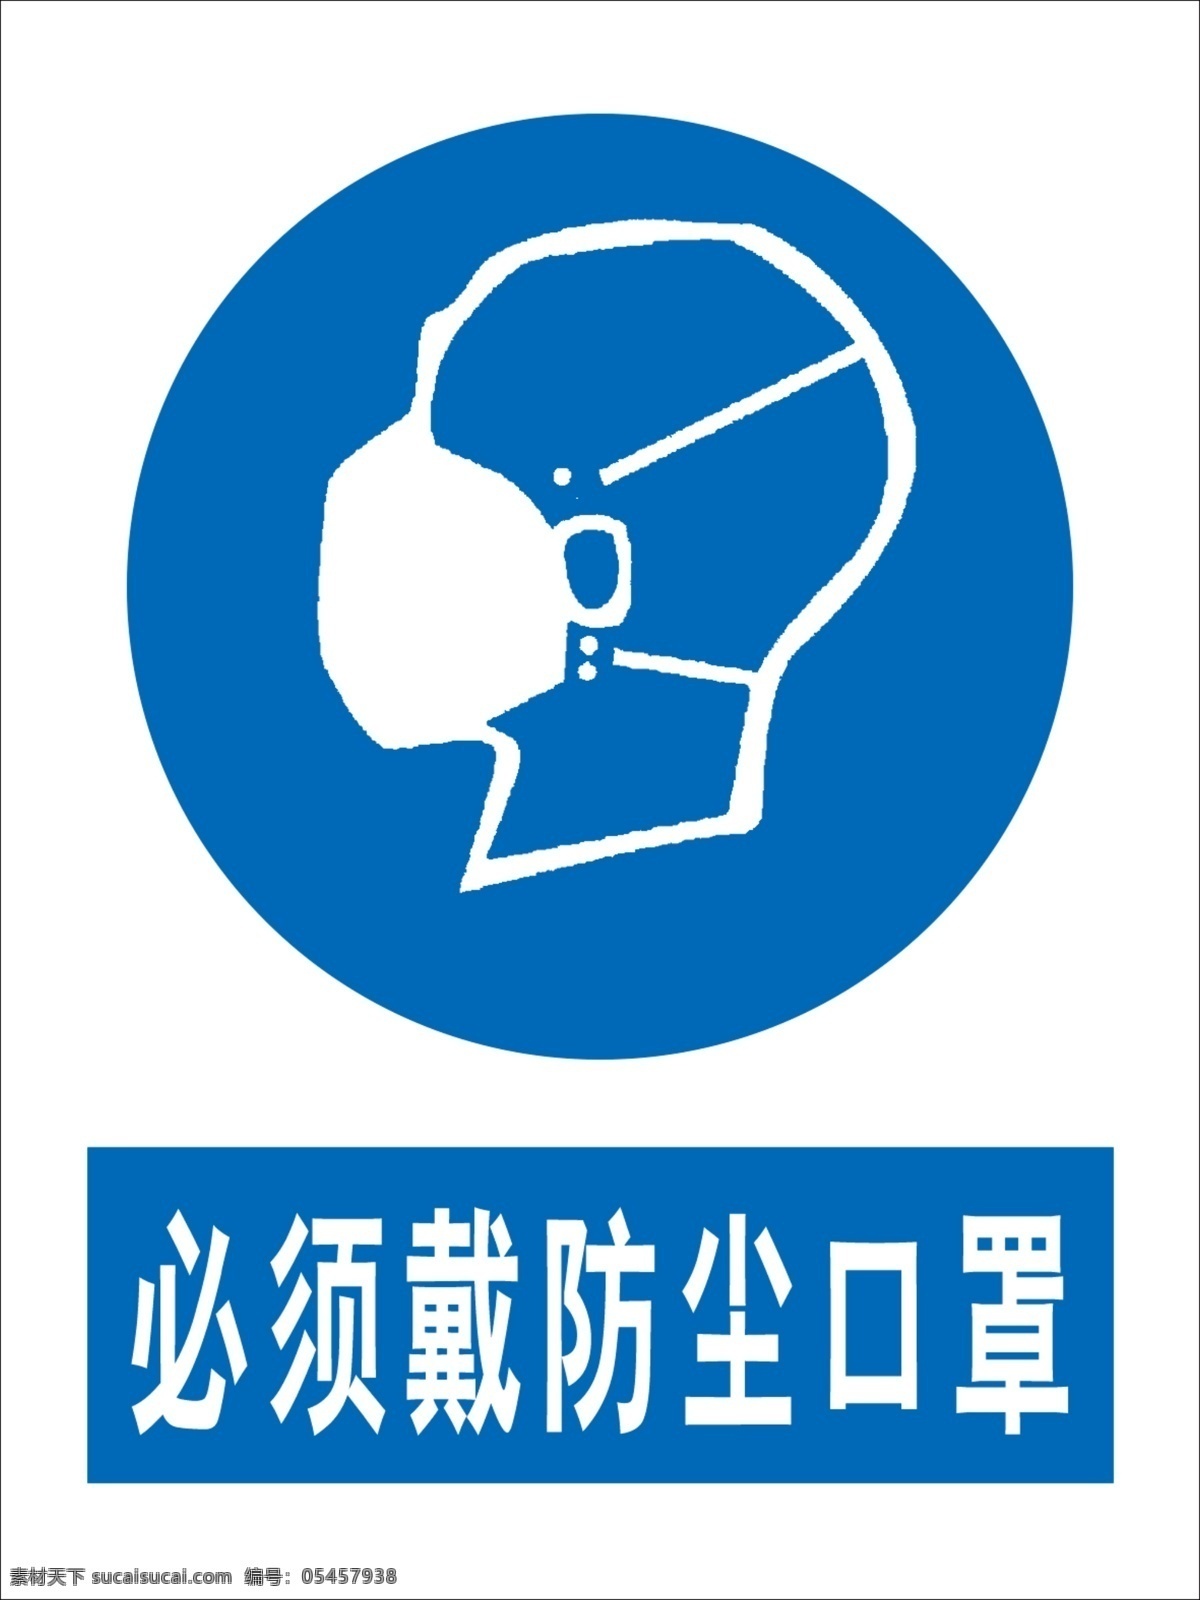 防护口罩图片 戴防护口罩 防护口罩 口罩 国标 安全标识 标志图标 公共标识标志